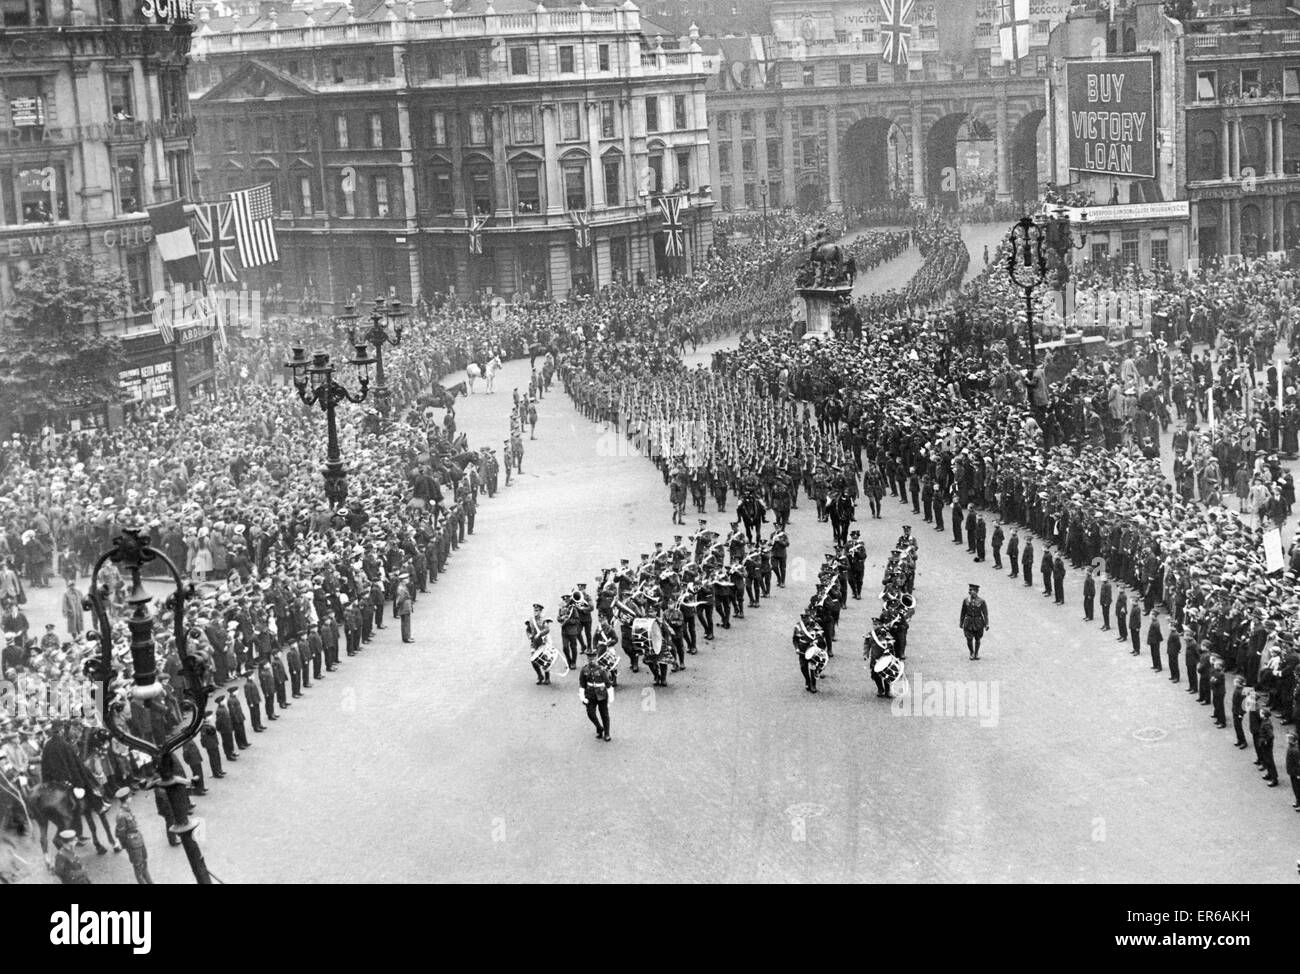 Britischen und alliierten Truppen gesehen hier März über den Trafalgar Square während der Siegesparade zum Ende des ersten Weltkrieges am 19. Juli 1919 feiern Stockfoto